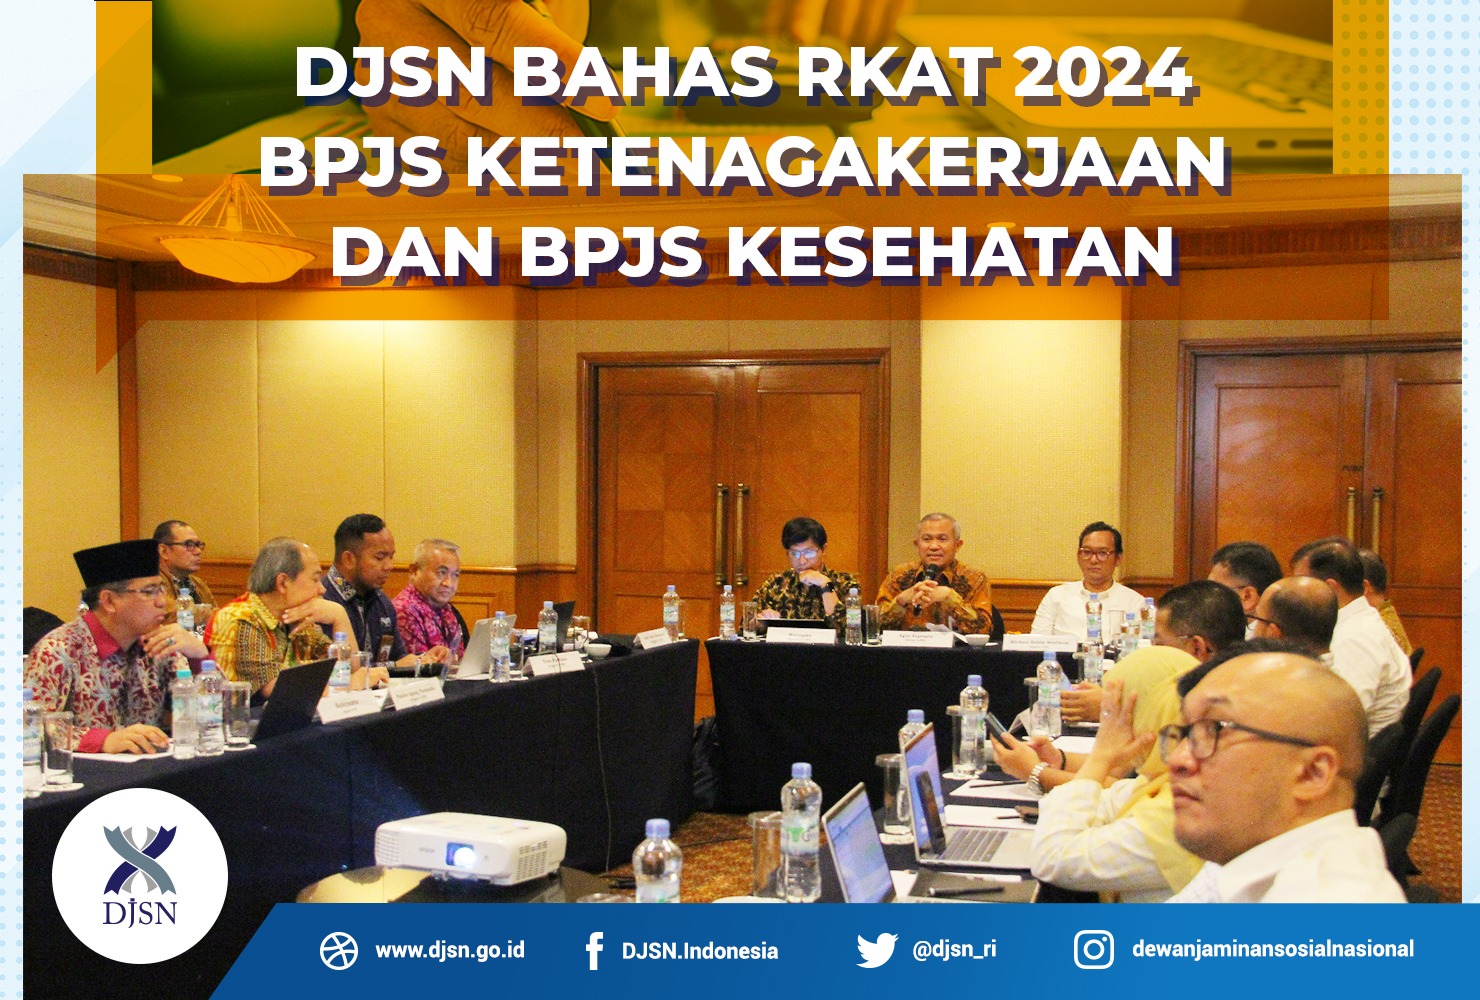 DJSN Bahas RKAT 2024 BPJS Ketenagakerjaan dan BPJS Kesehatan